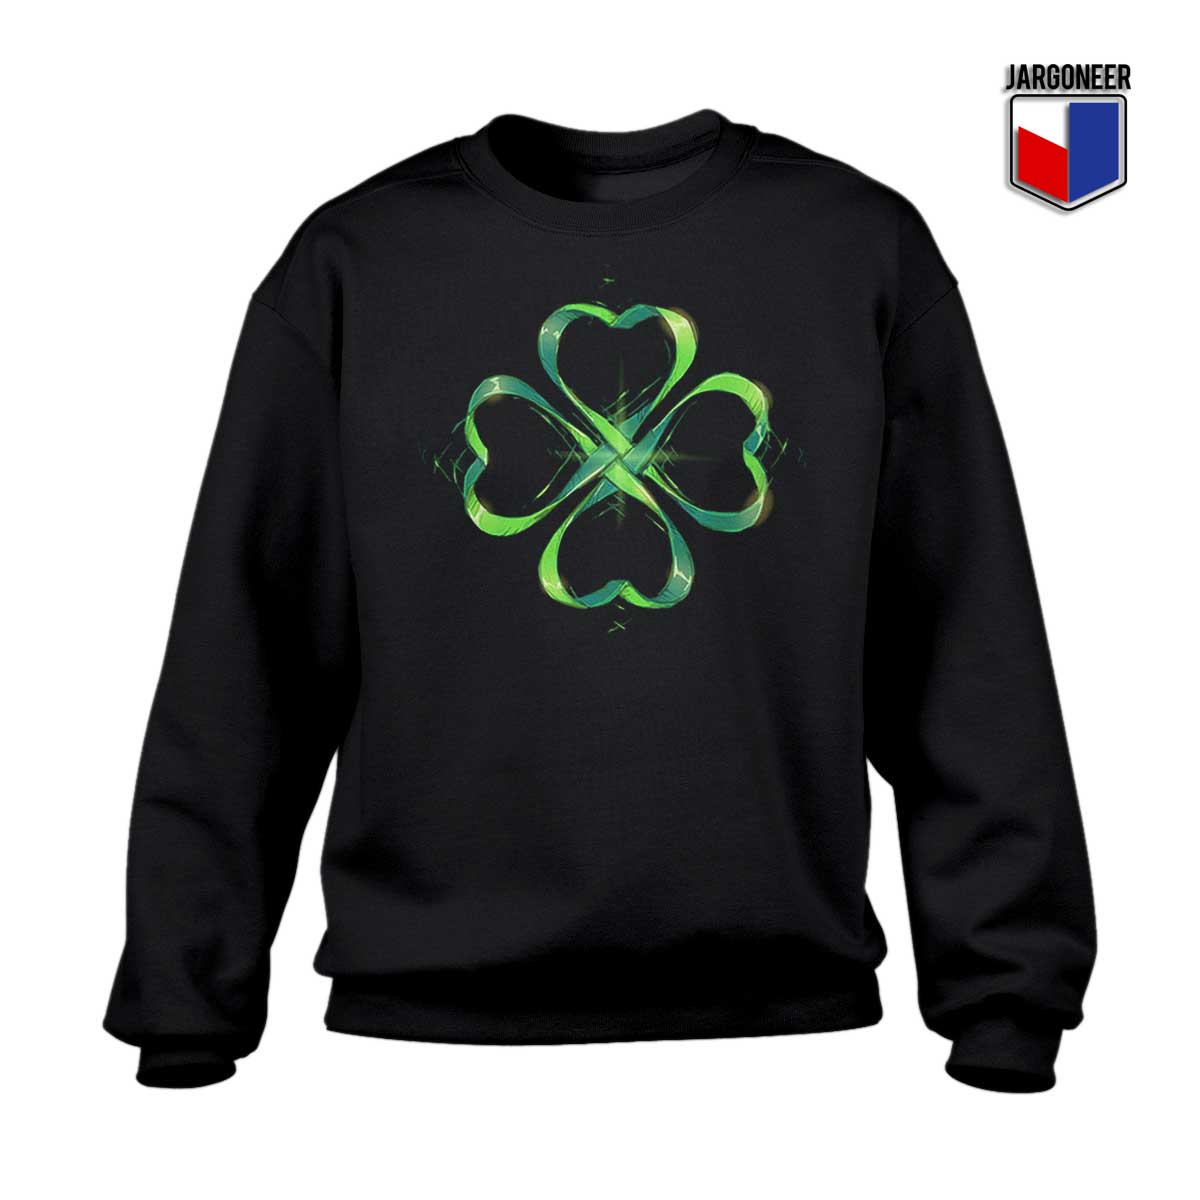 St. Patricks Day Vintage Sweatshirt - Shop Unique Graphic Cool Shirt Designs